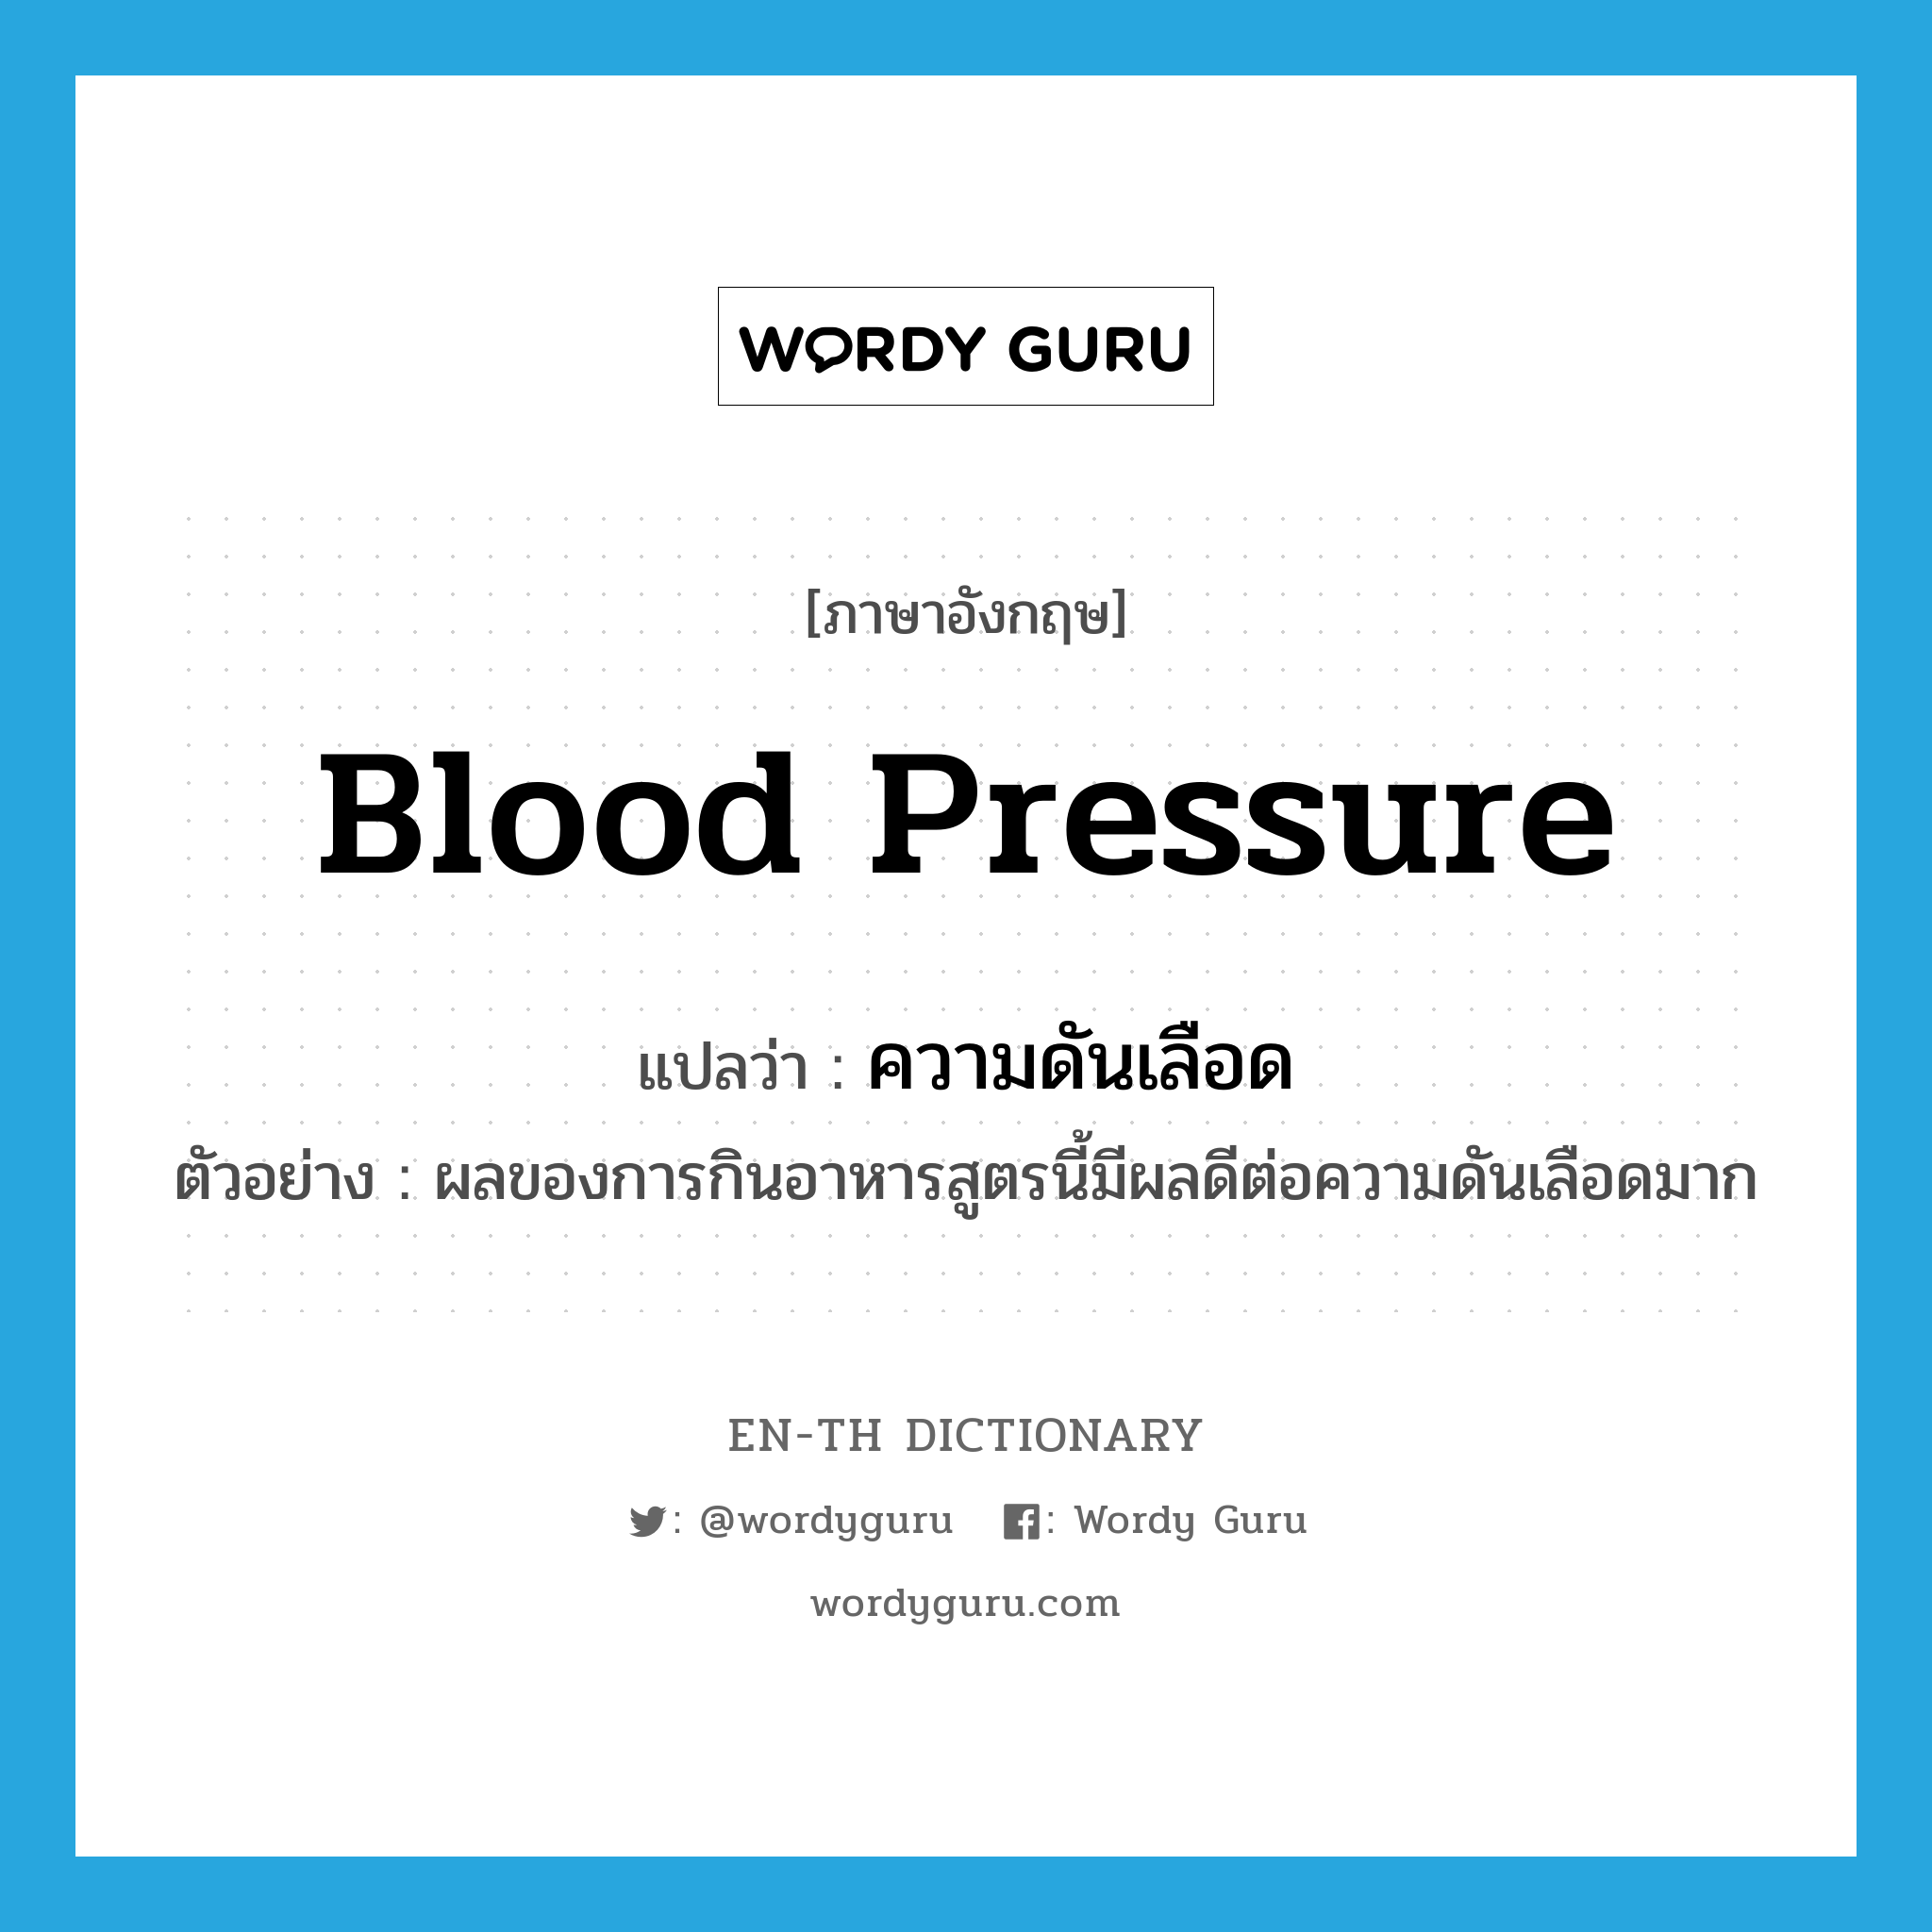 blood pressure แปลว่า?, คำศัพท์ภาษาอังกฤษ blood pressure แปลว่า ความดันเลือด ประเภท N ตัวอย่าง ผลของการกินอาหารสูตรนี้มีผลดีต่อความดันเลือดมาก หมวด N